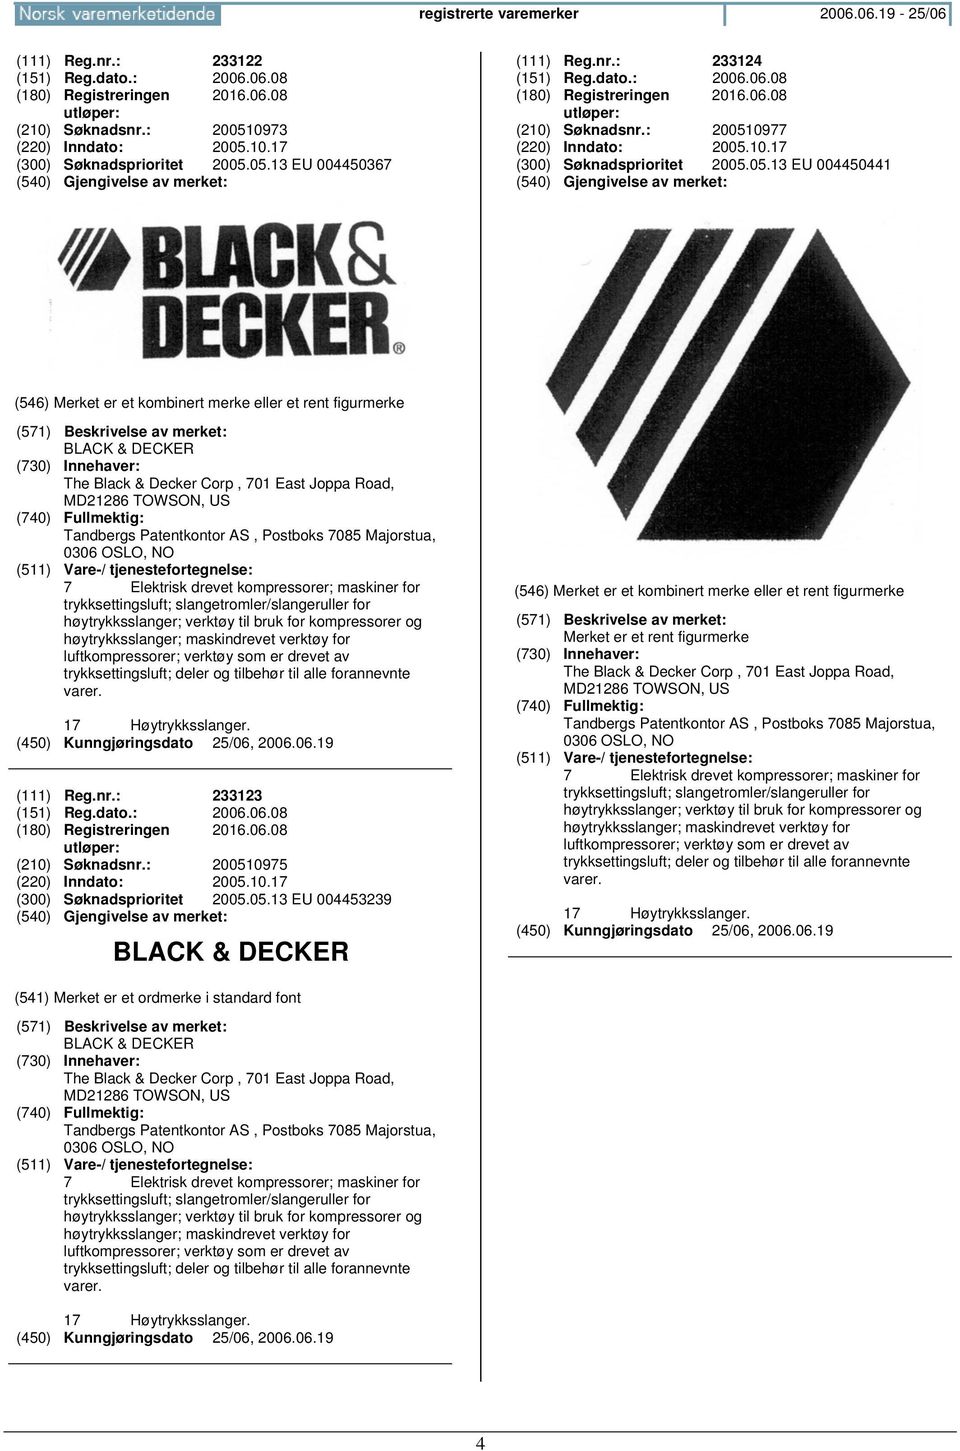 004450441 BLACK & DECKER The Black & Decker Corp, 701 East Joppa Road, MD21286 TOWSON, US Tandbergs Patentkontor AS, Postboks 7085 Majorstua, 0306 OSLO, 7 Elektrisk drevet kompressorer; maskiner for